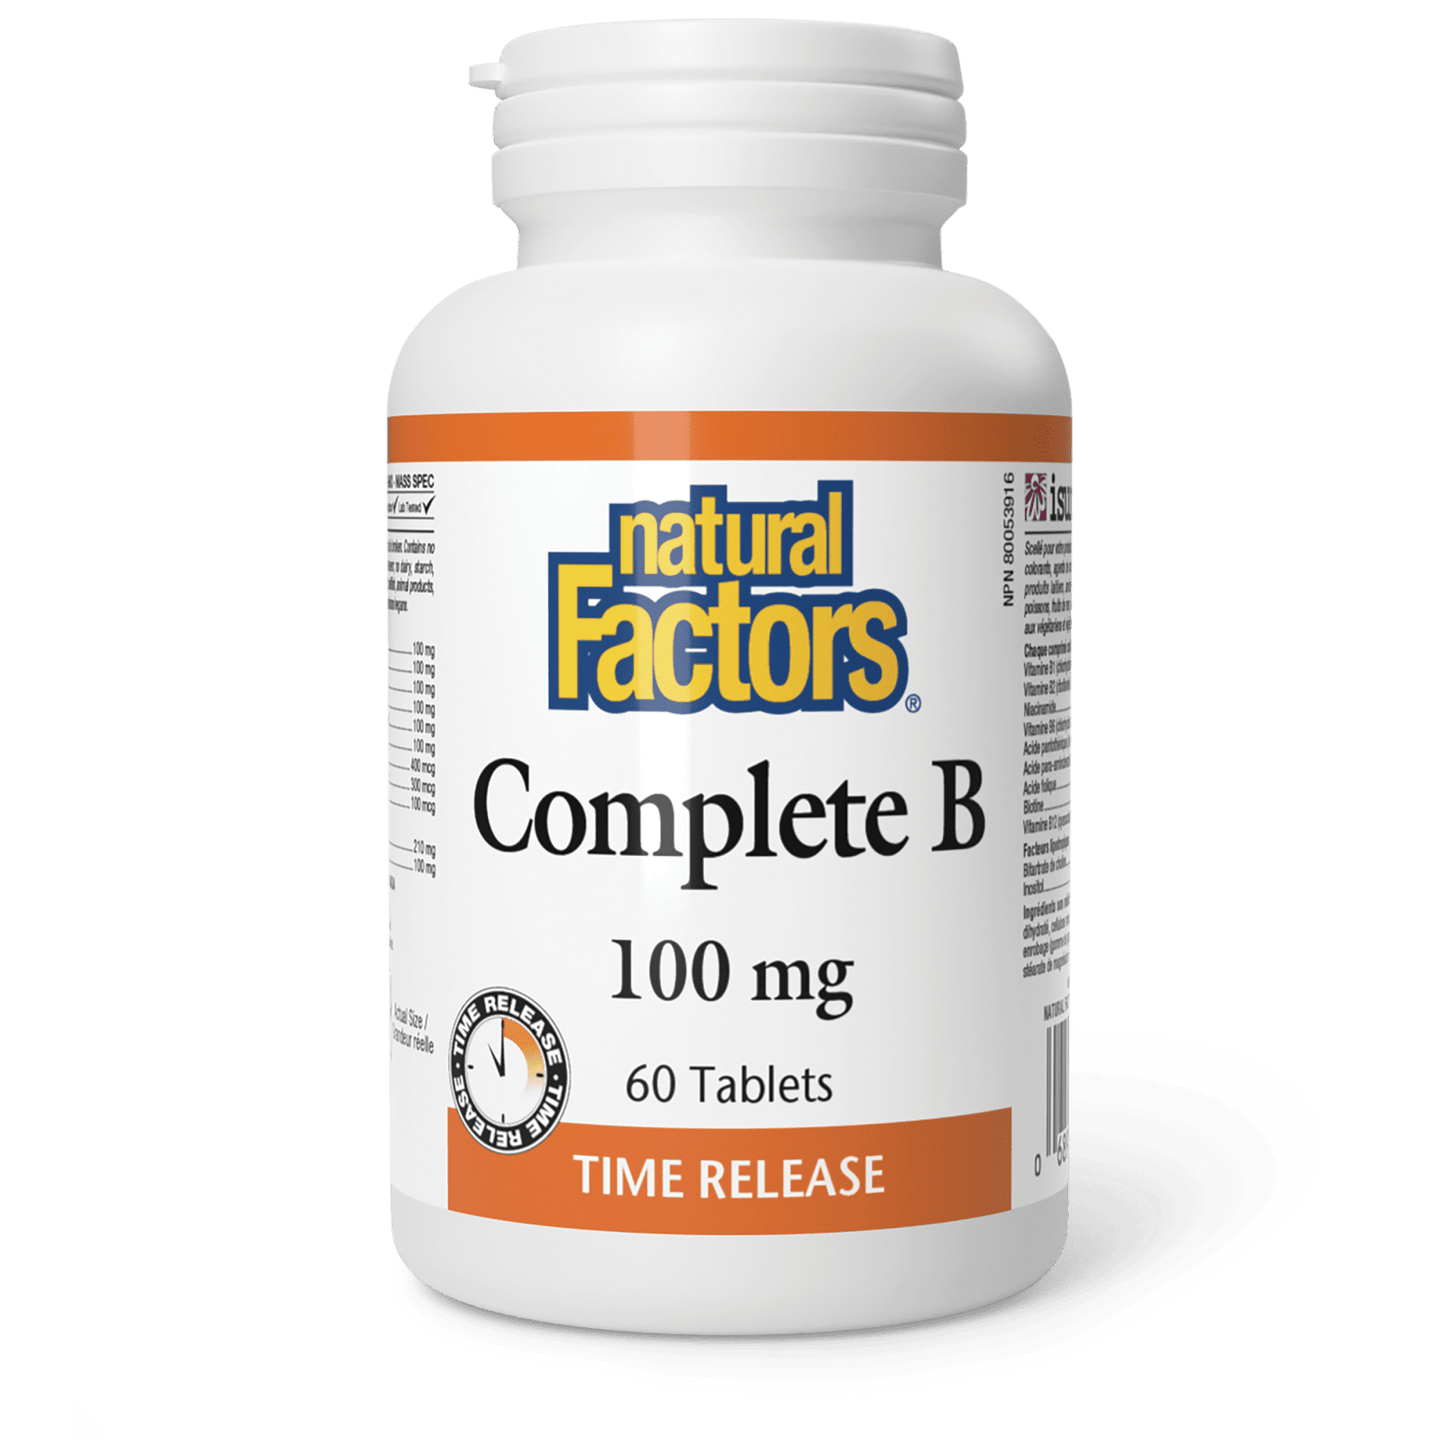 Complete B Timed Release 100 mg, Natural Factors|v|image|1140